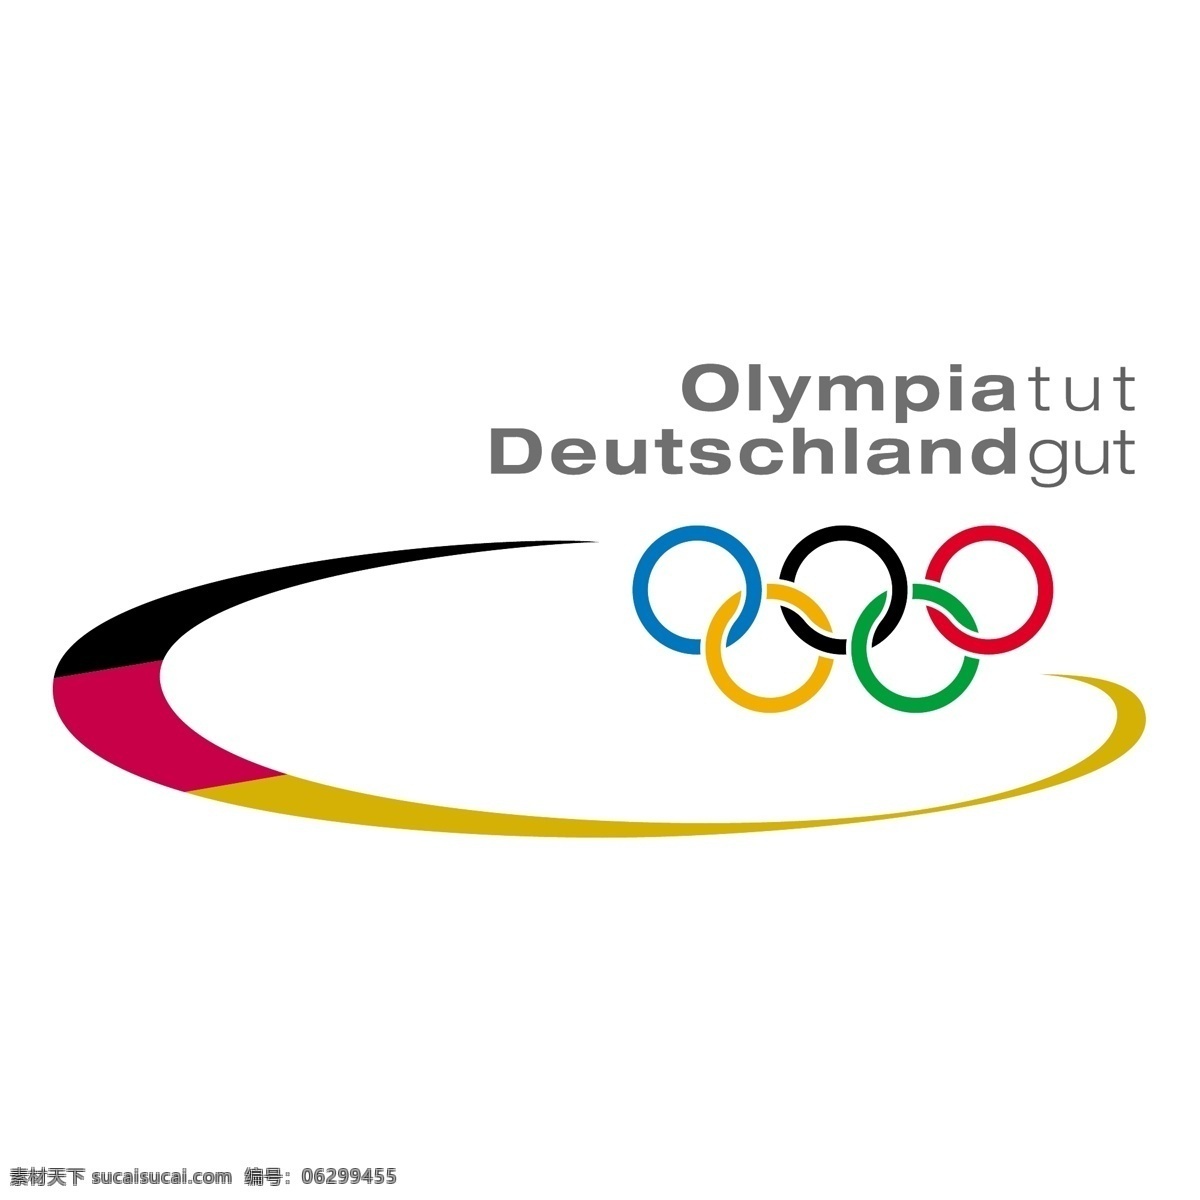 奥林匹亚 啧啧 德国 肠 肠道 矢量图形 啧 德国的肠道 自由 矢量 建筑家居